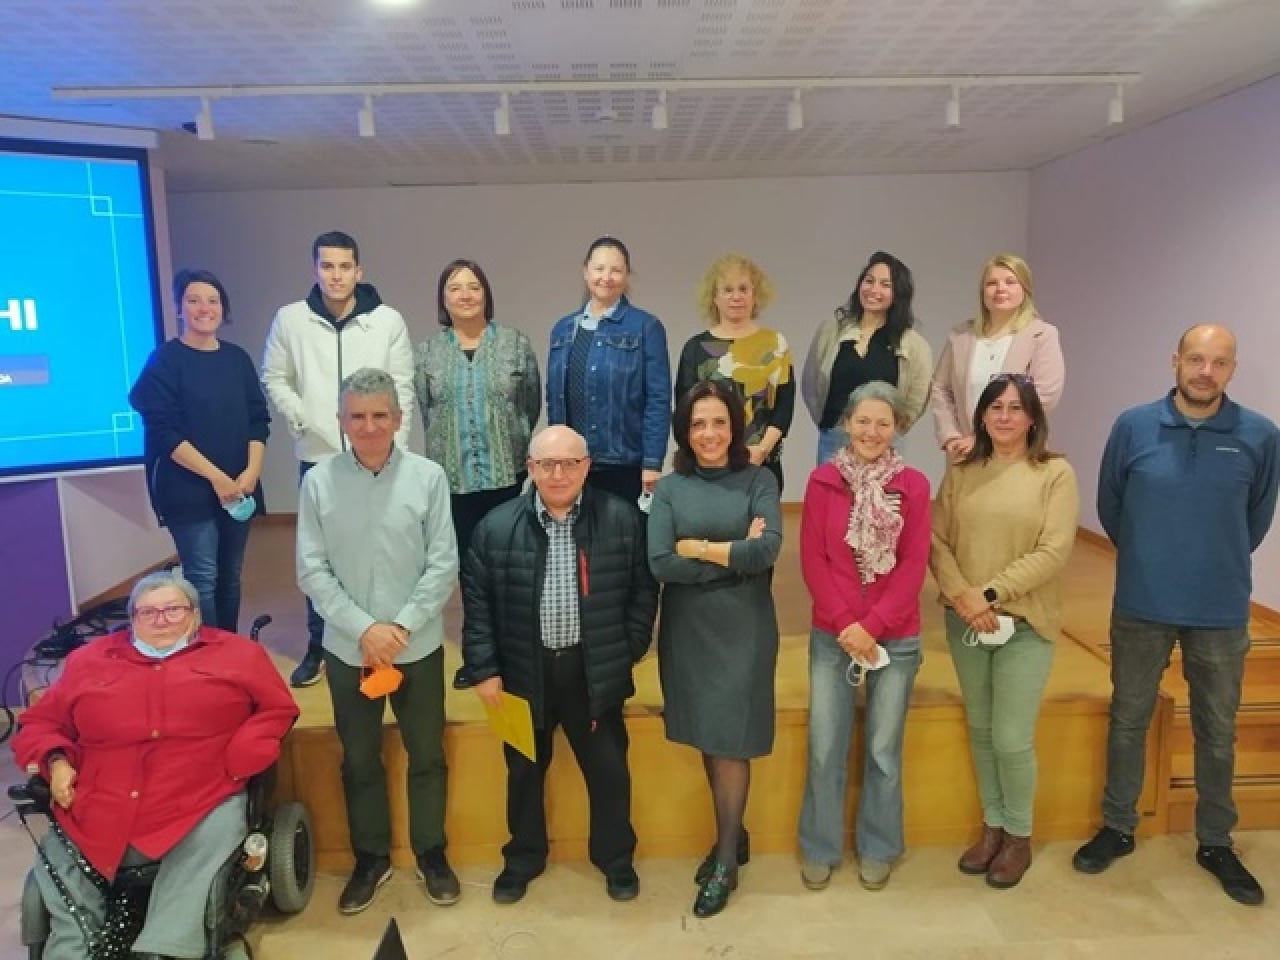 El CNL fa una crida per incorporar voluntaris al Voluntariat per la llengua (VxL) que resideixin al Baix Camp, especialment a Reus, Cambrils i l’Hospitalet de l’Infant